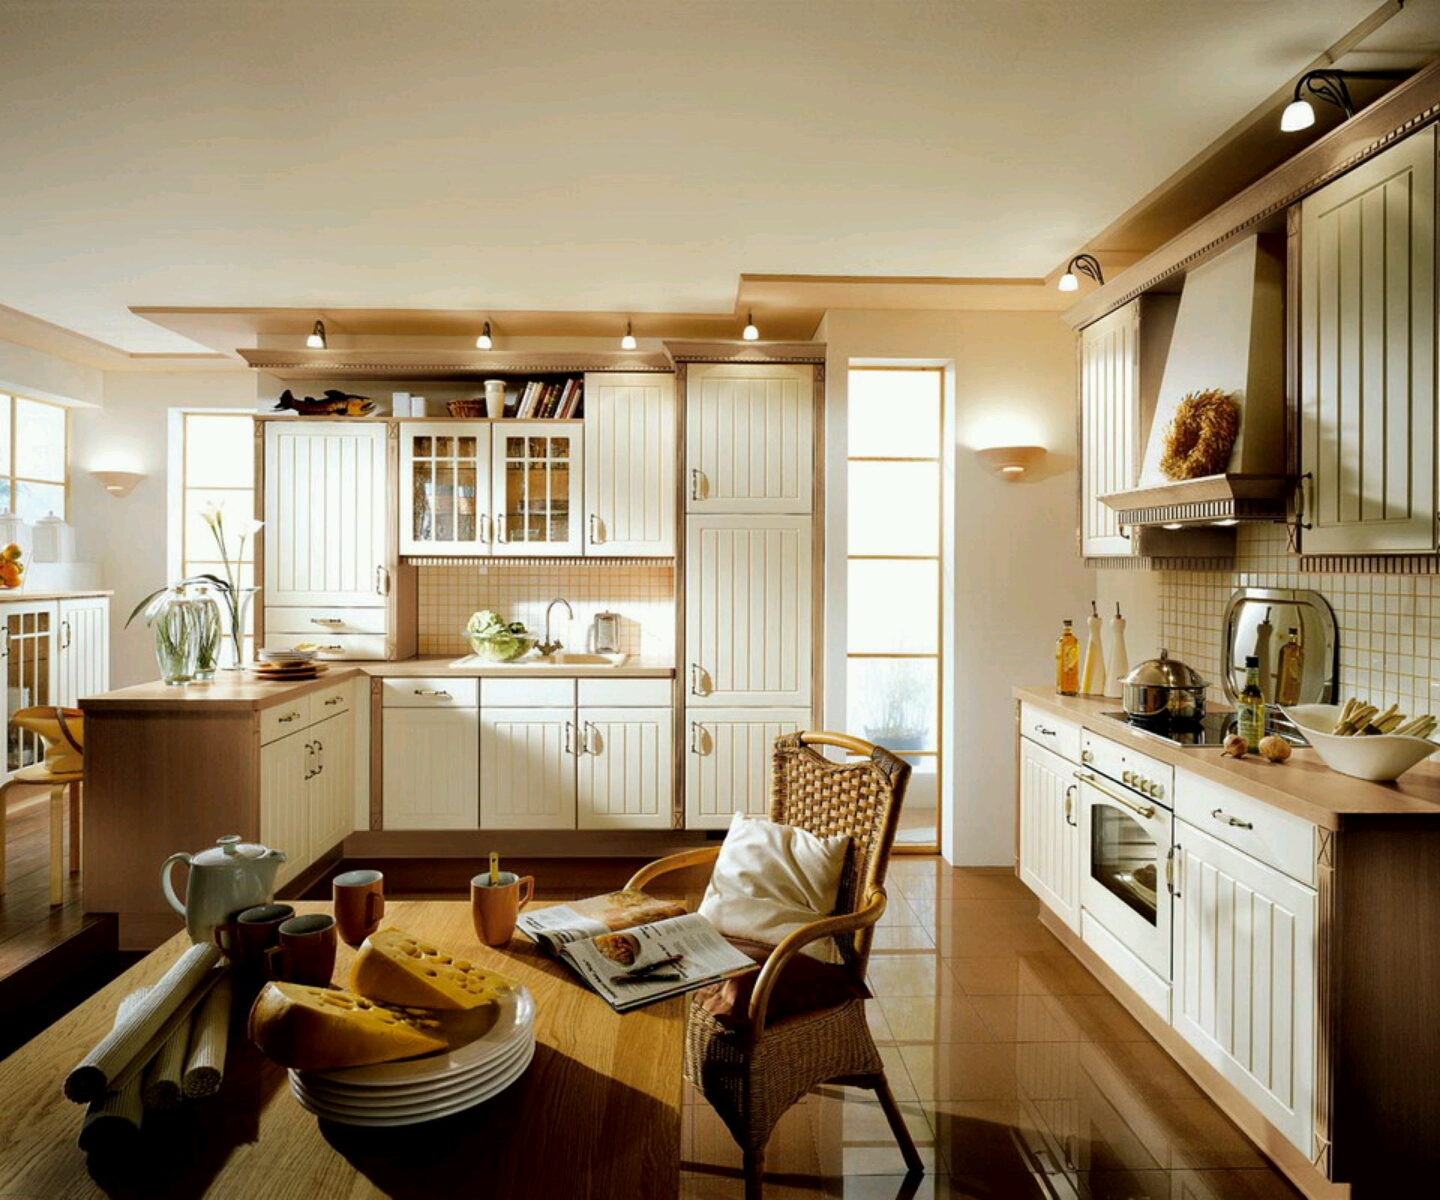 Luxury kitchen, modern kitchen cabinets designs ...